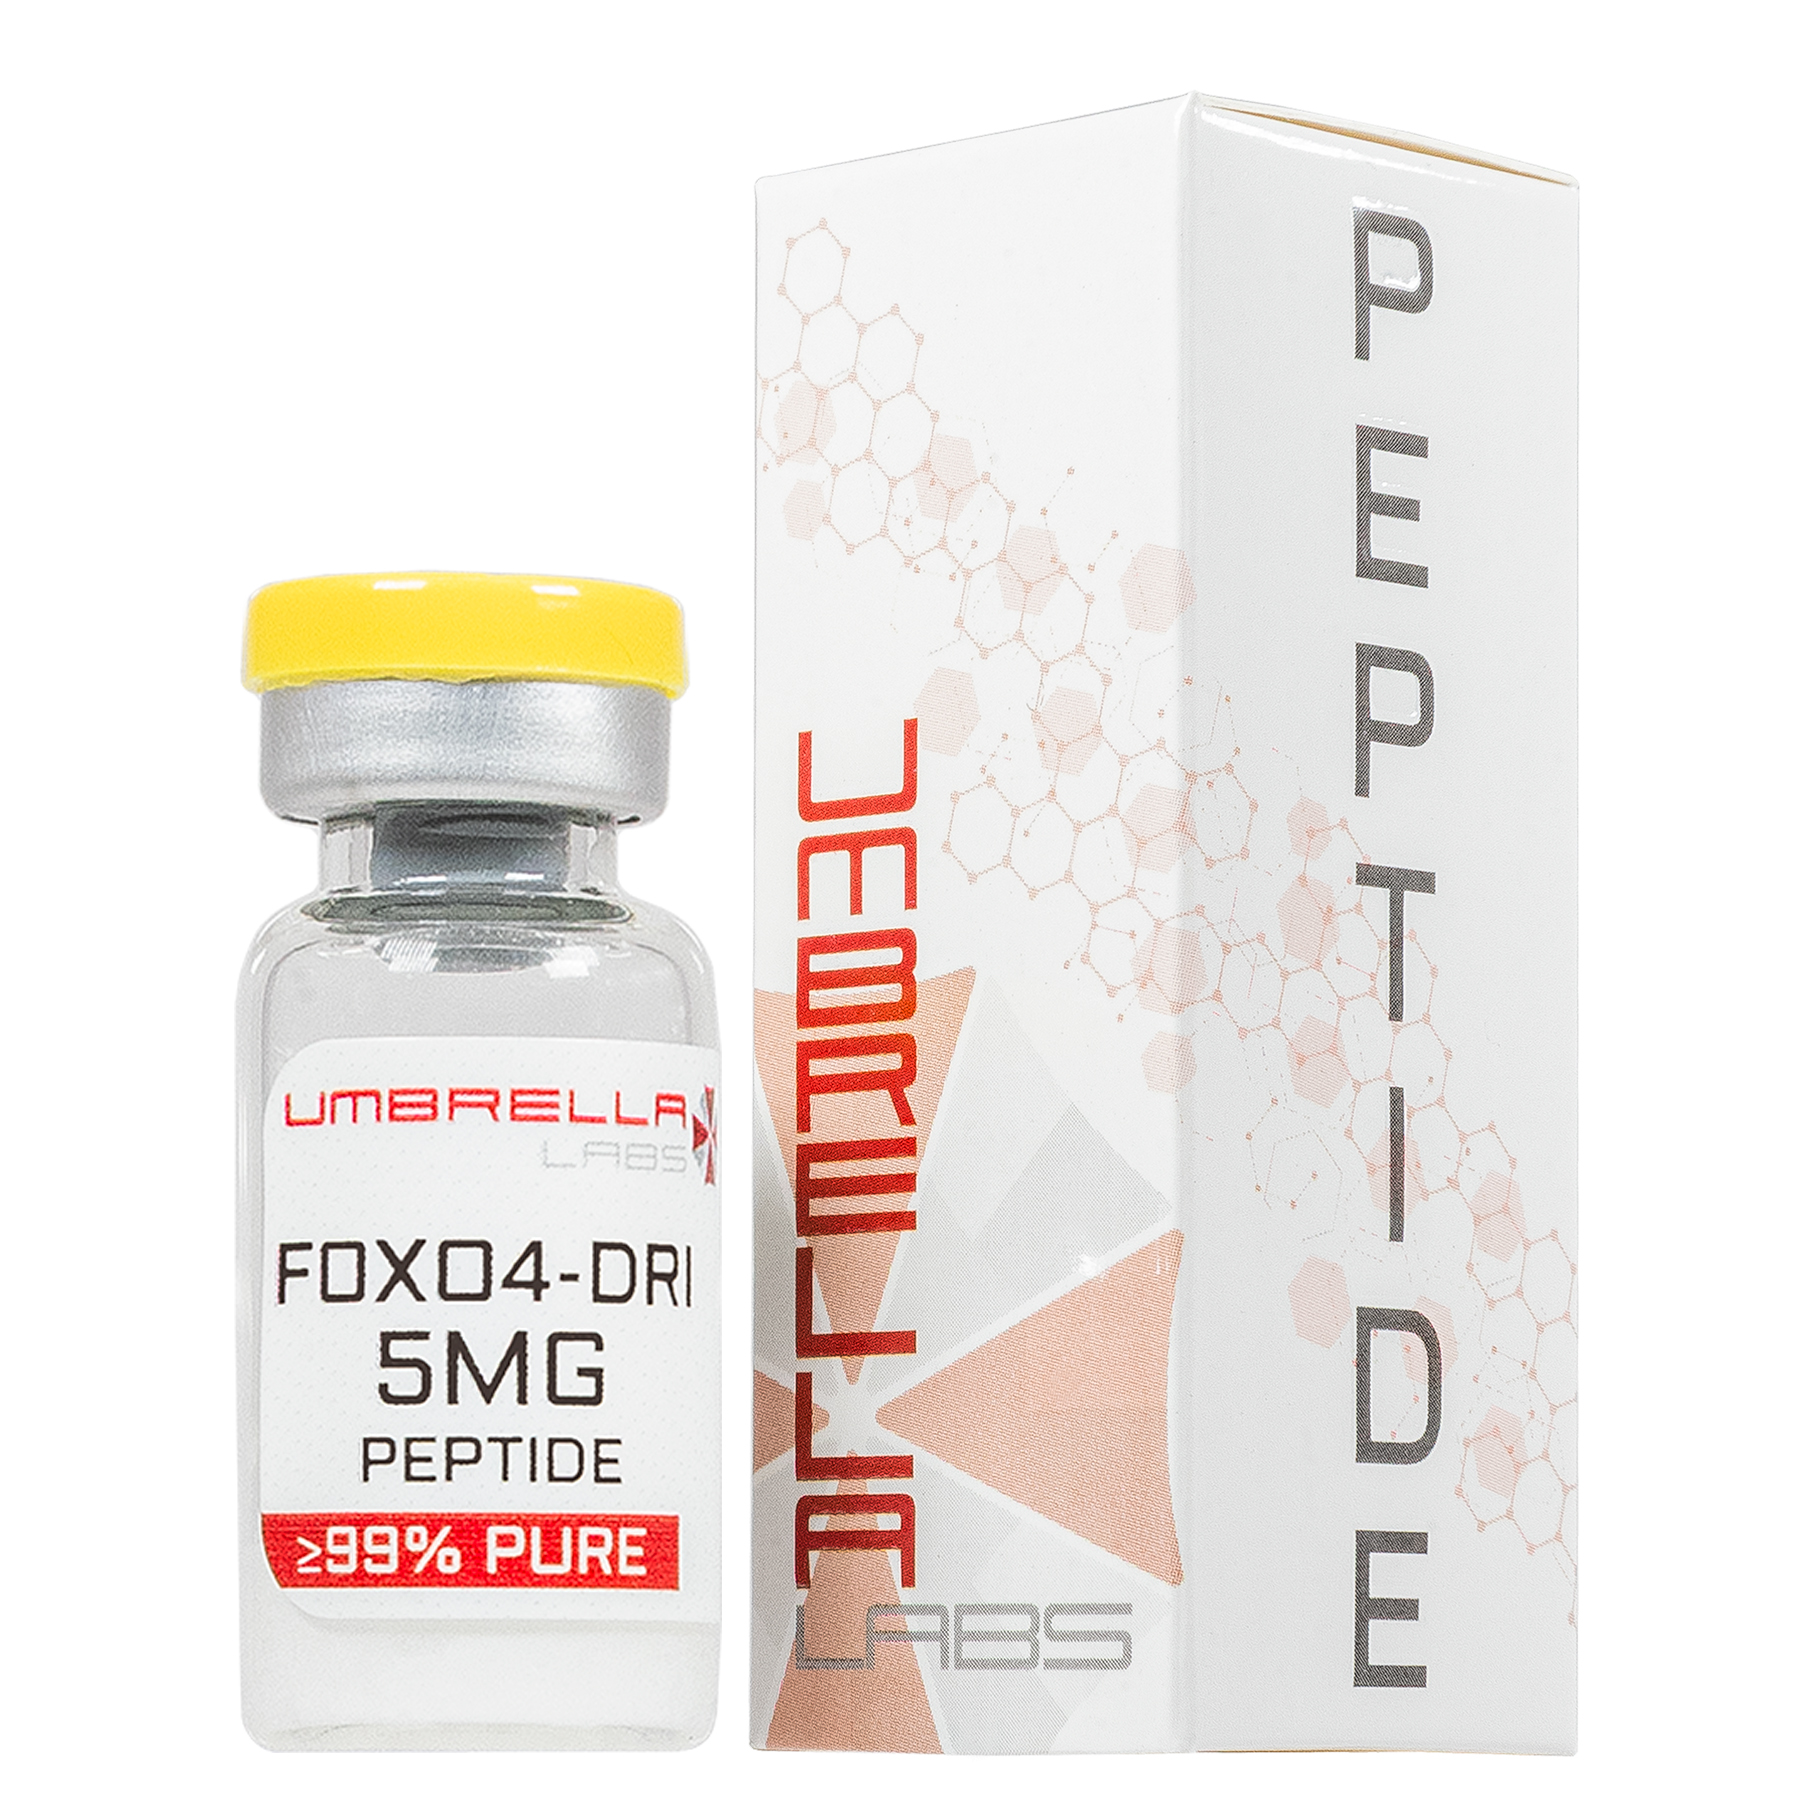 foxo4 dri peptide 10mg vial